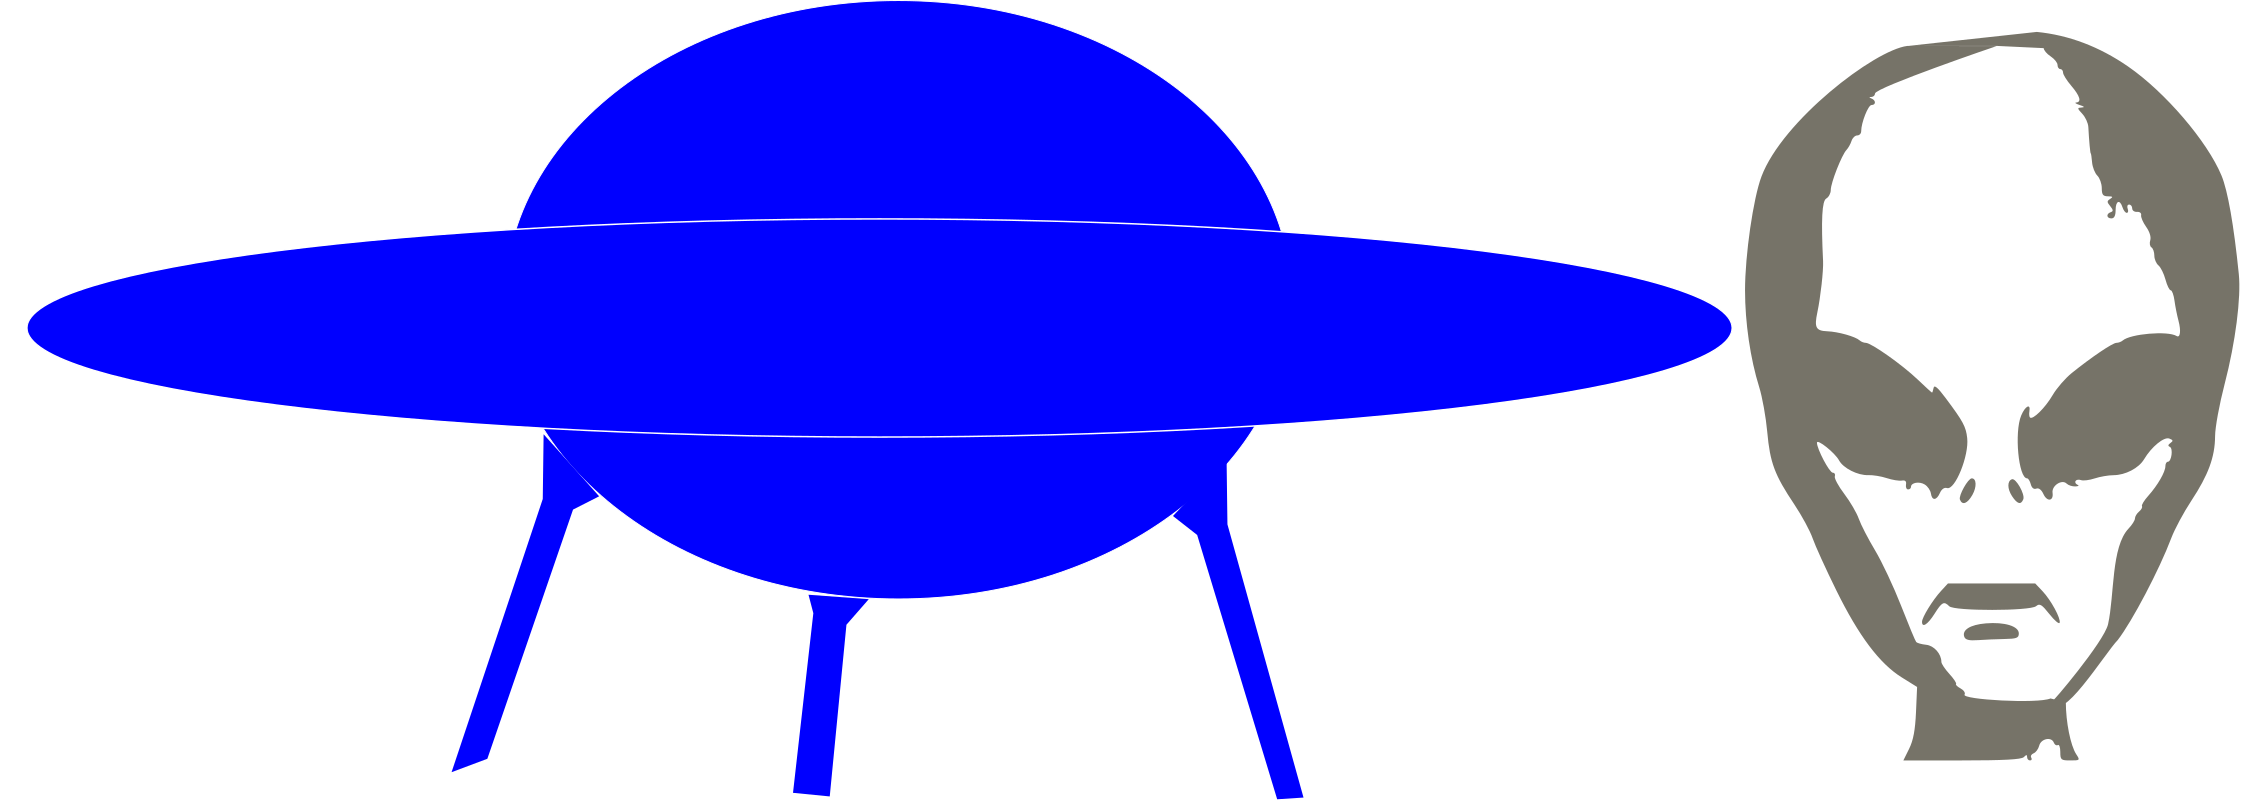 Download File:UFO icon.svg - Wikipedia